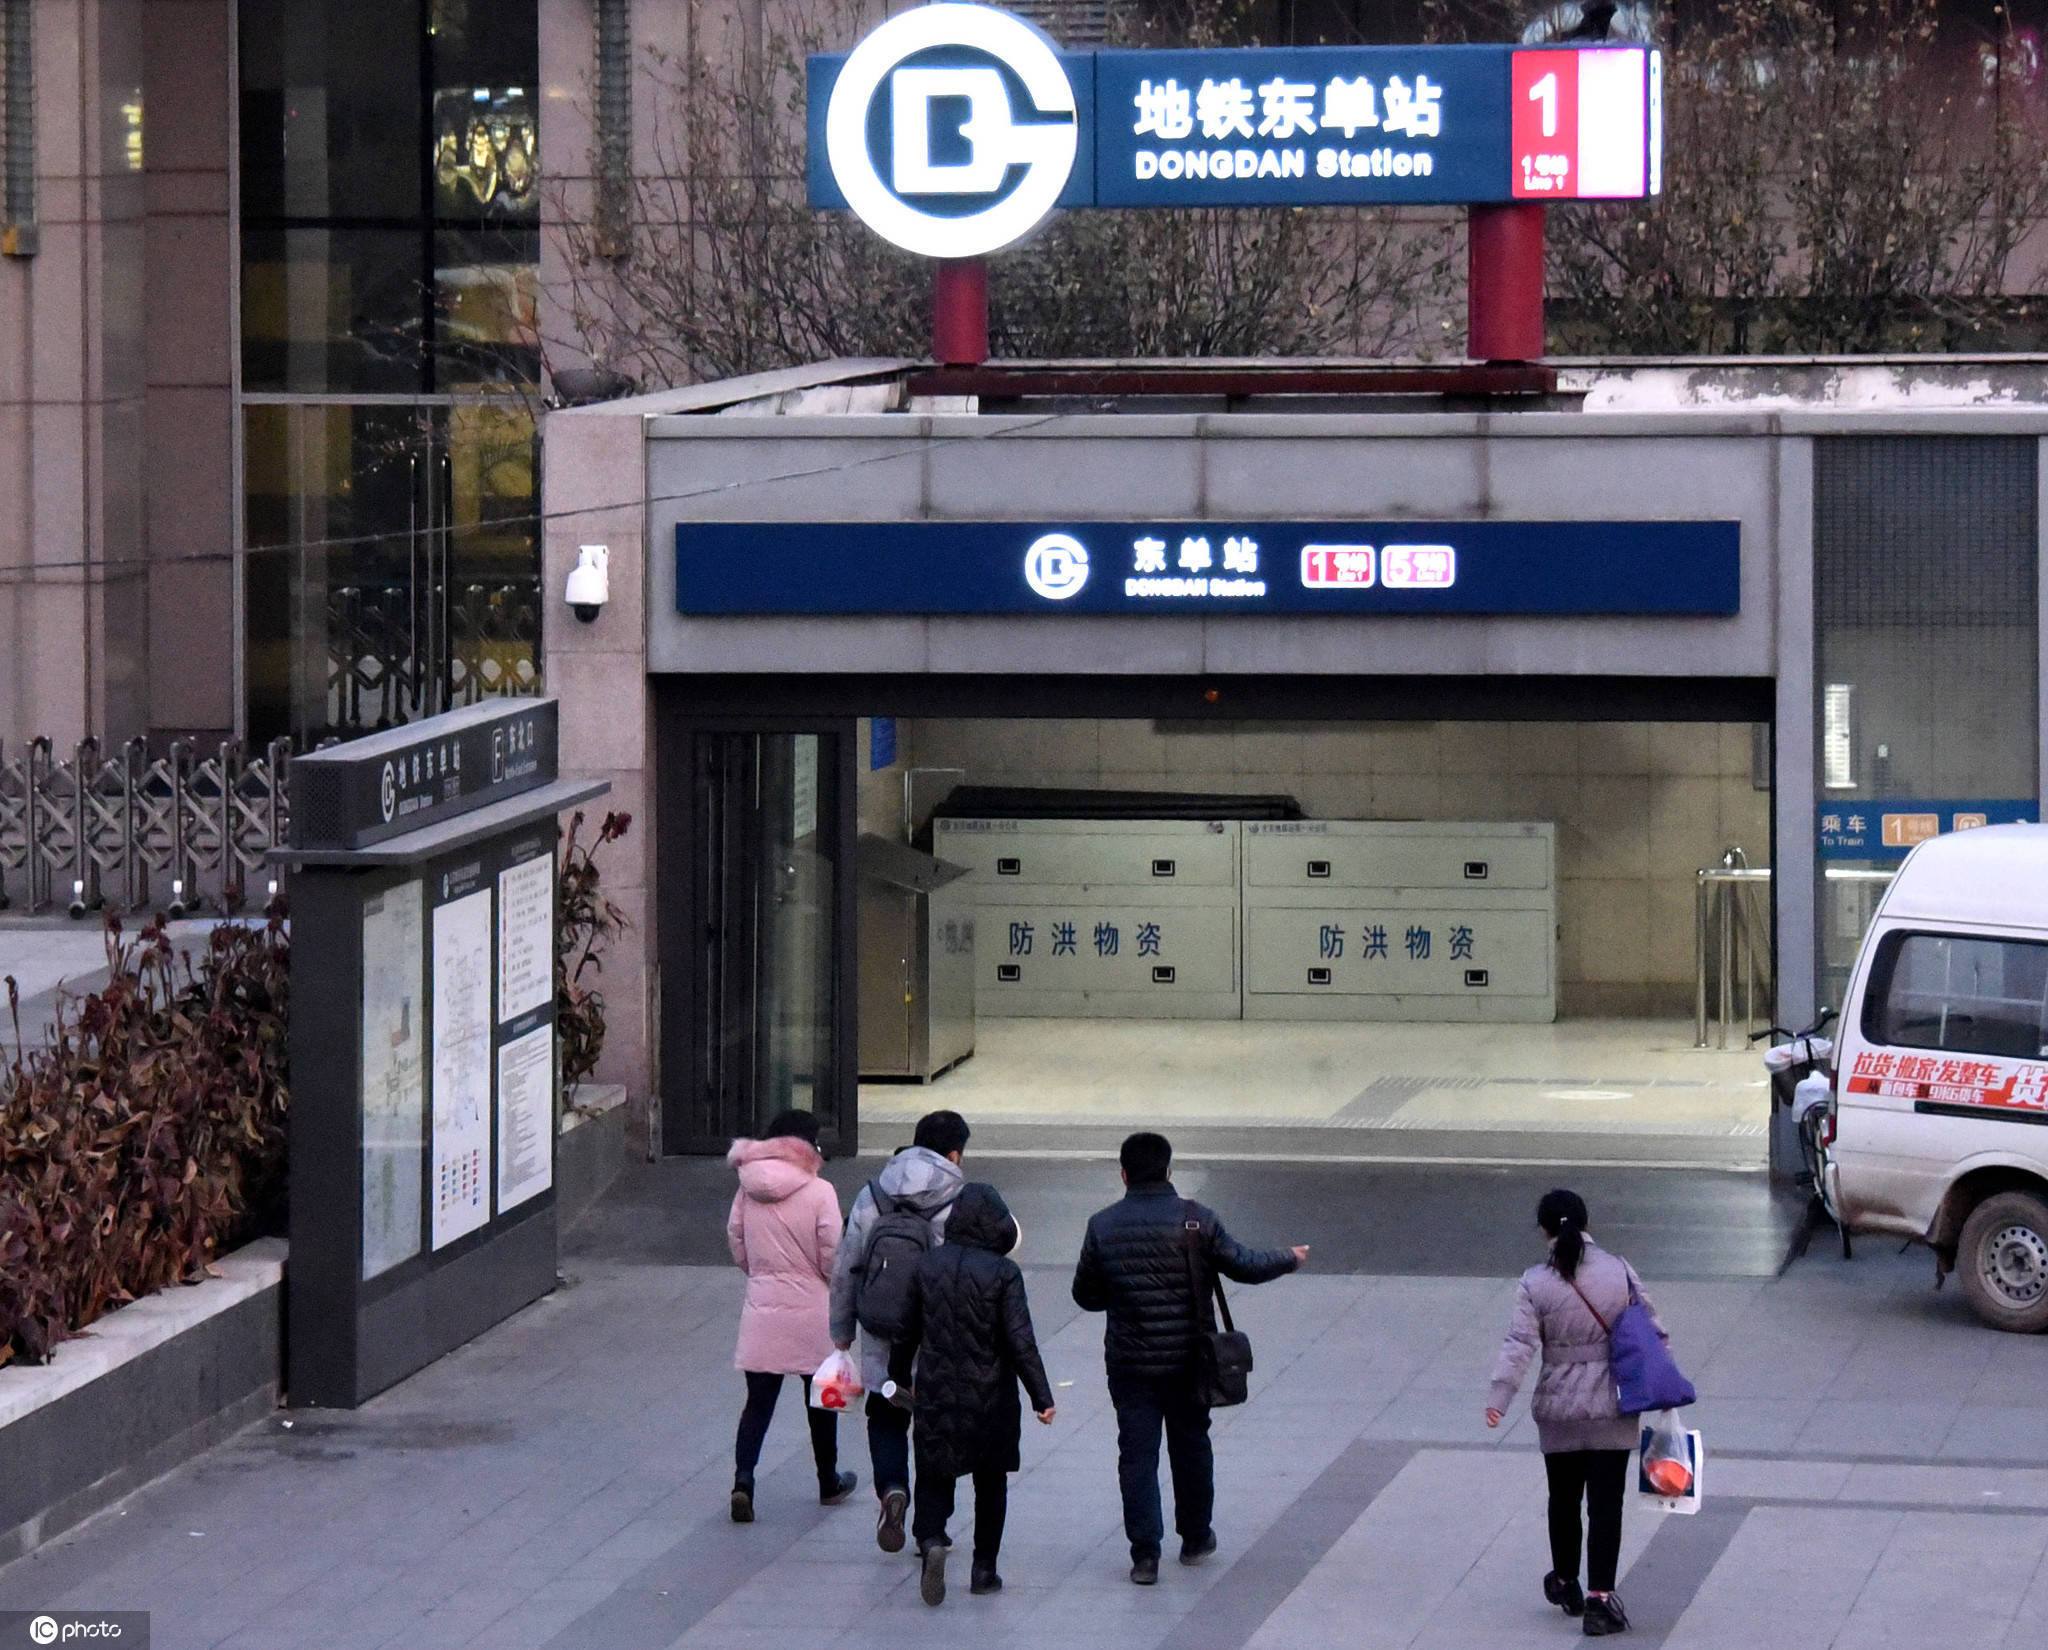 装上|北京地铁东单站装上智能门 有望全市推广